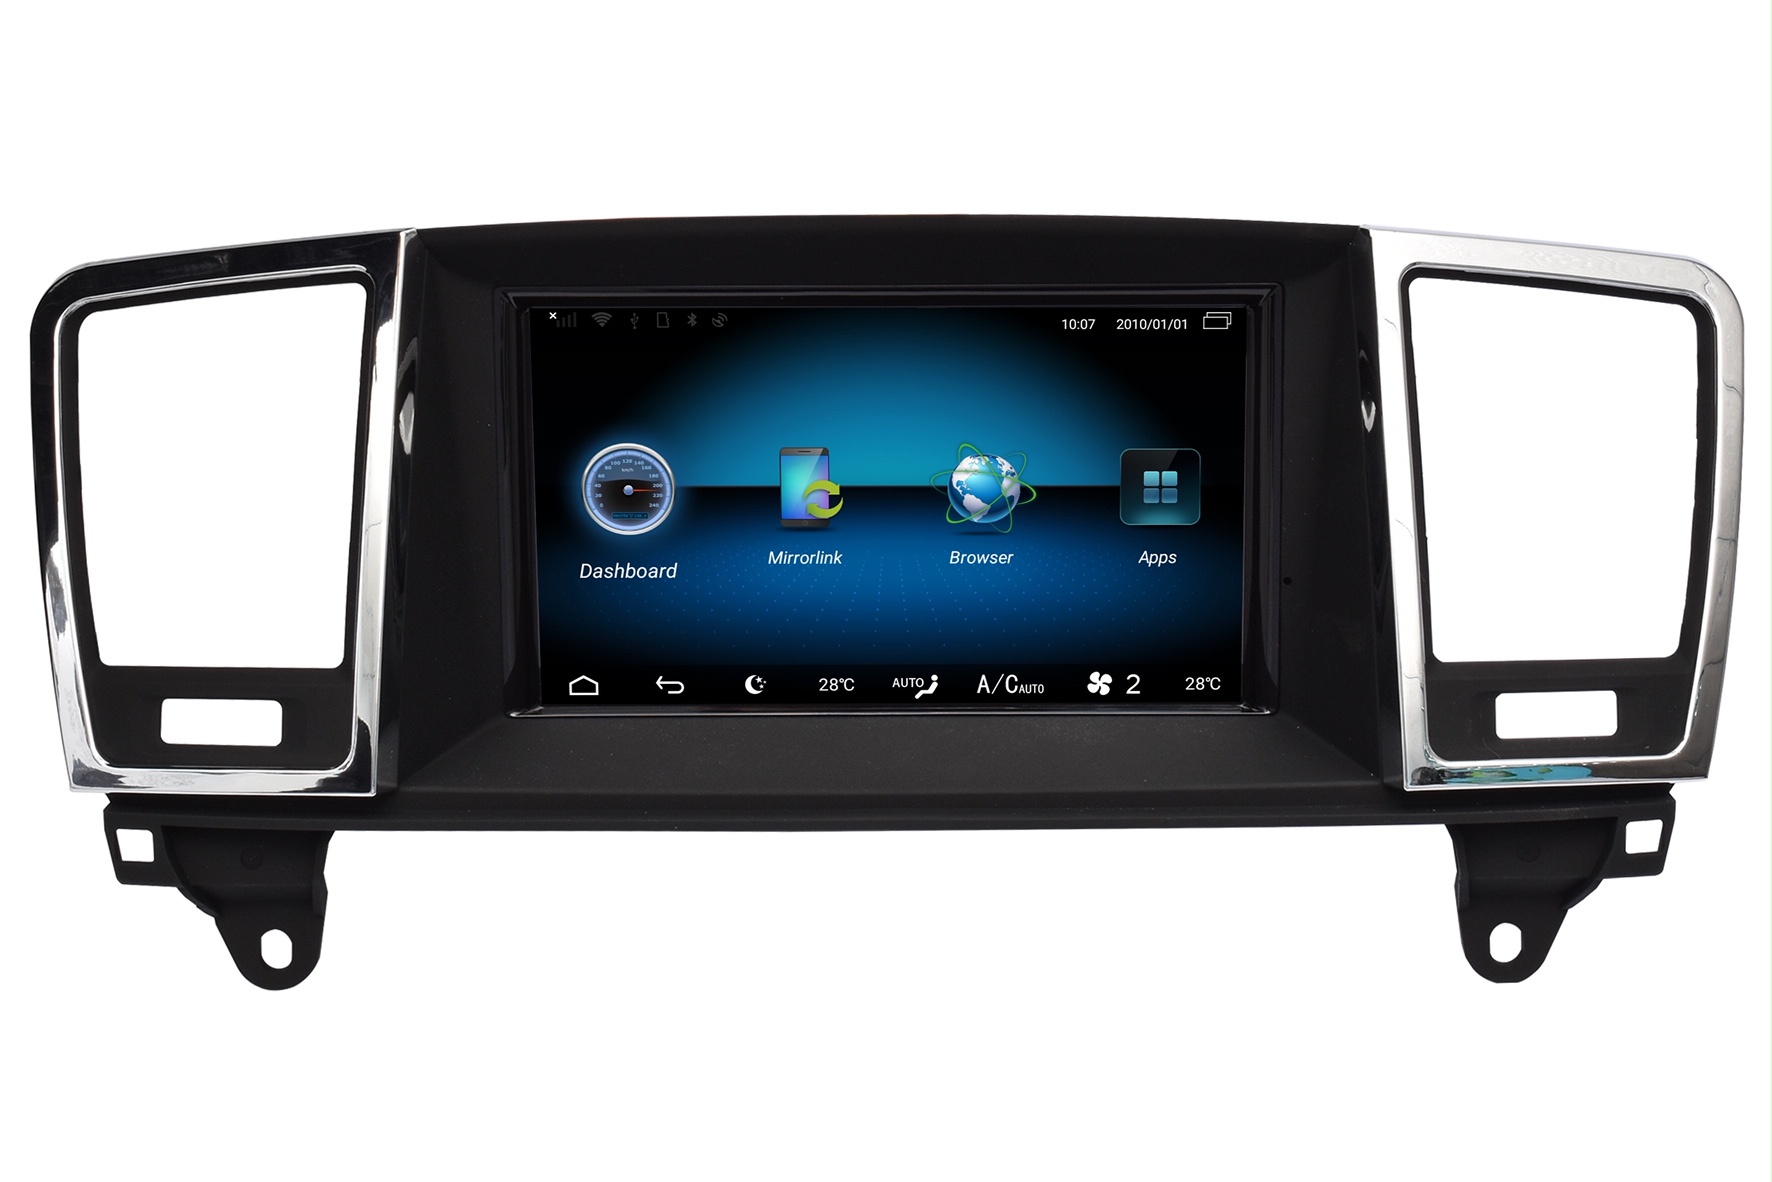 Mercedes ML navigatie vanaf 2012 carkit android 11 met apple carplay en android auto